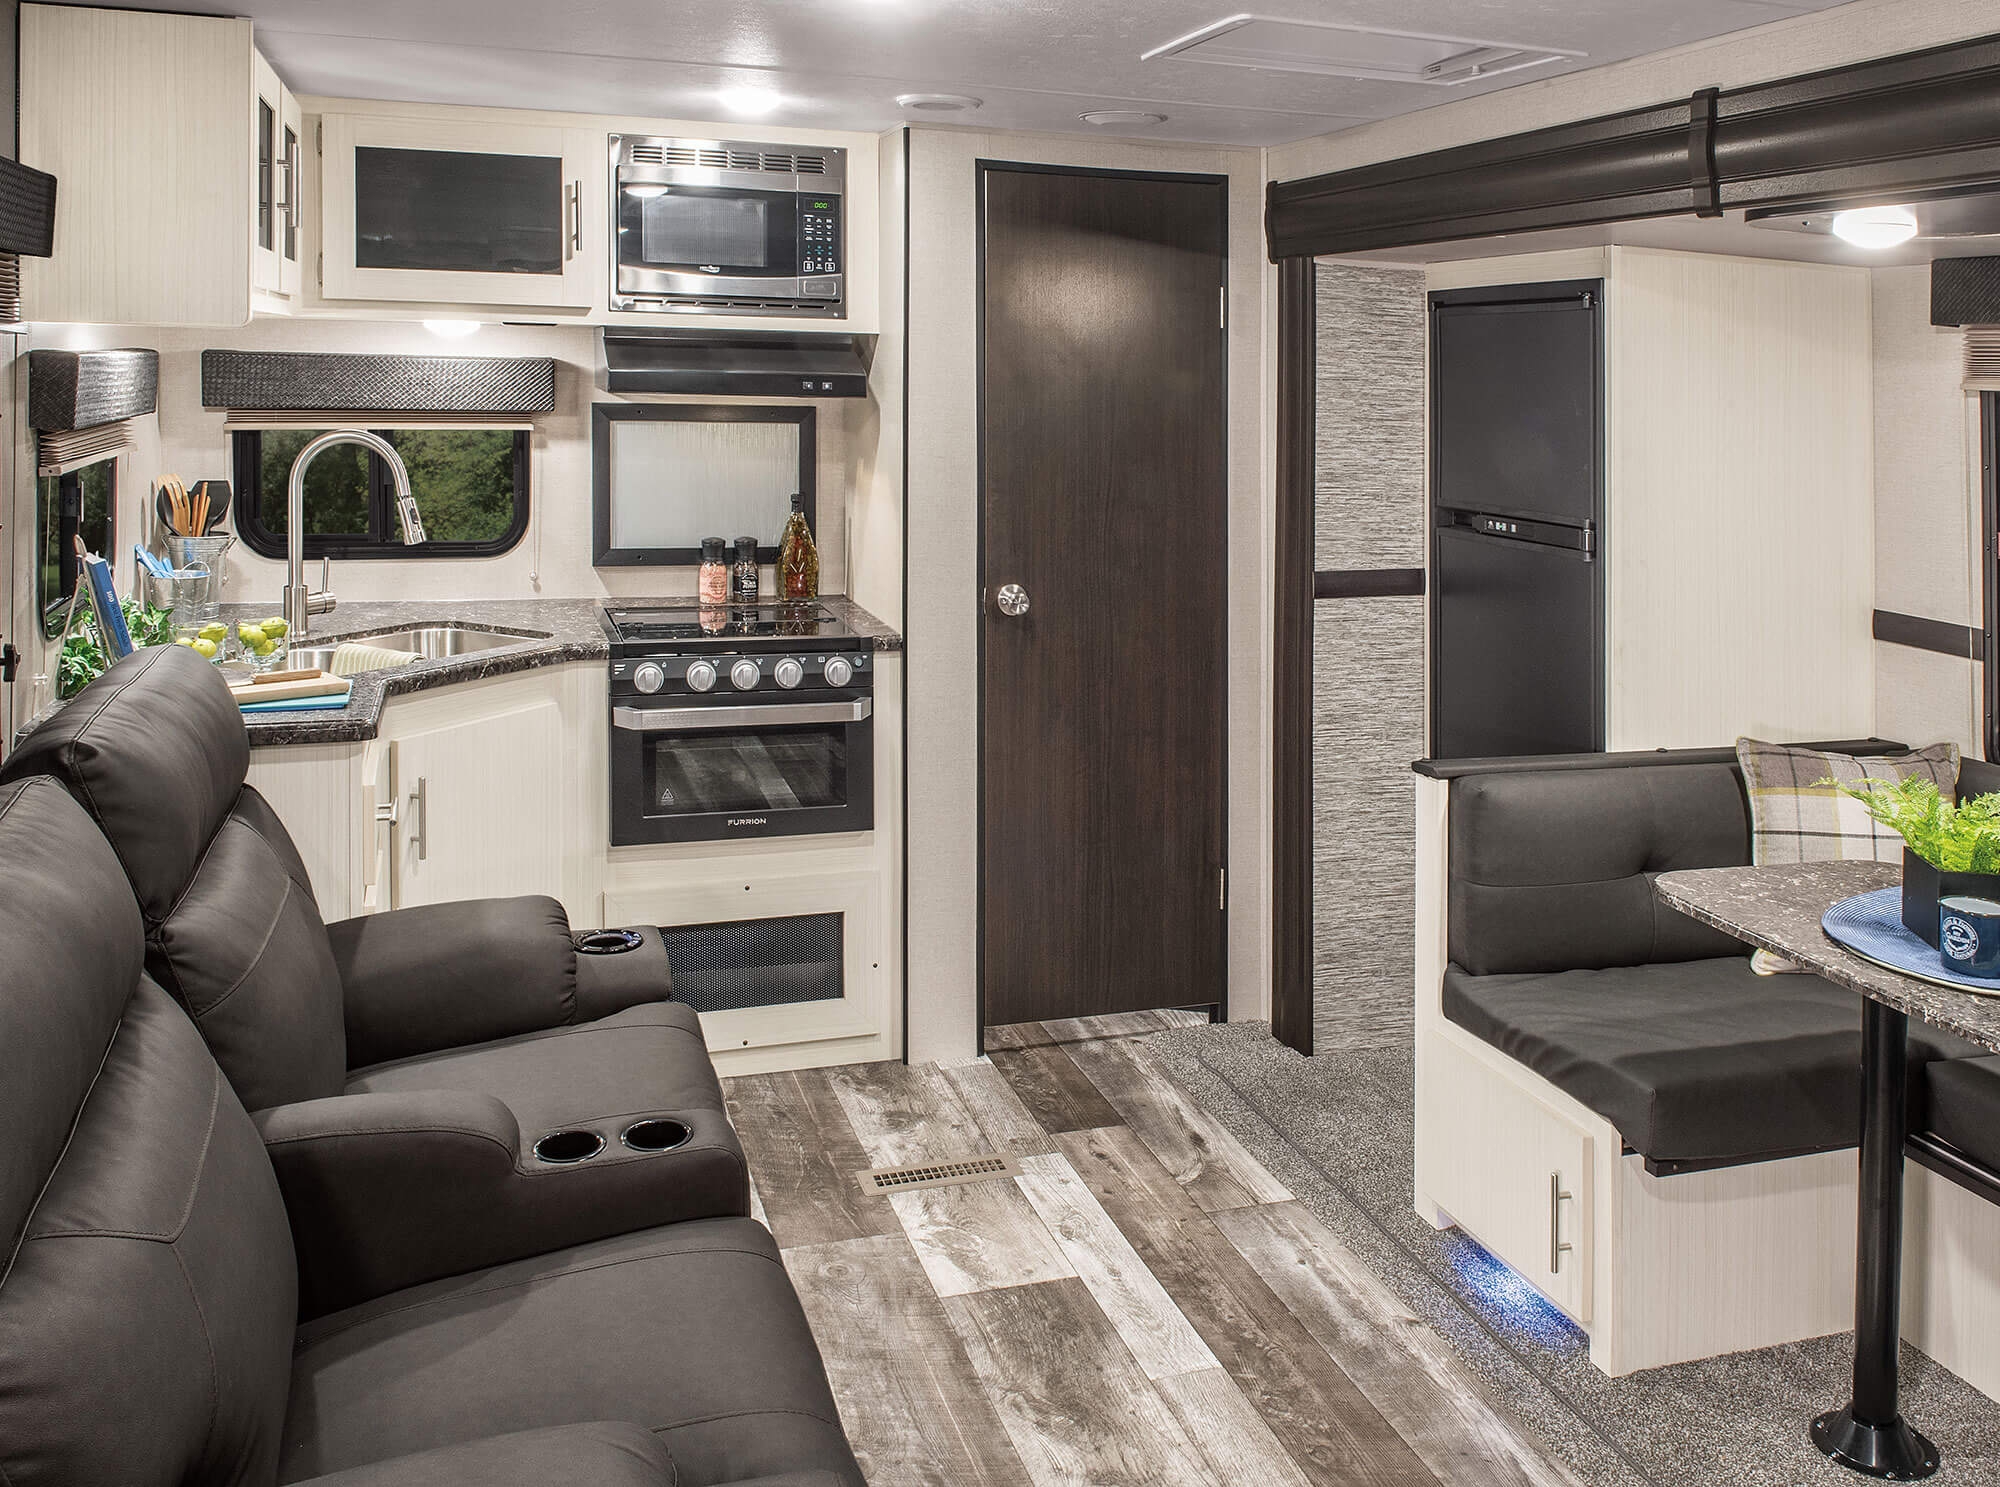 camper trailer kitchen design